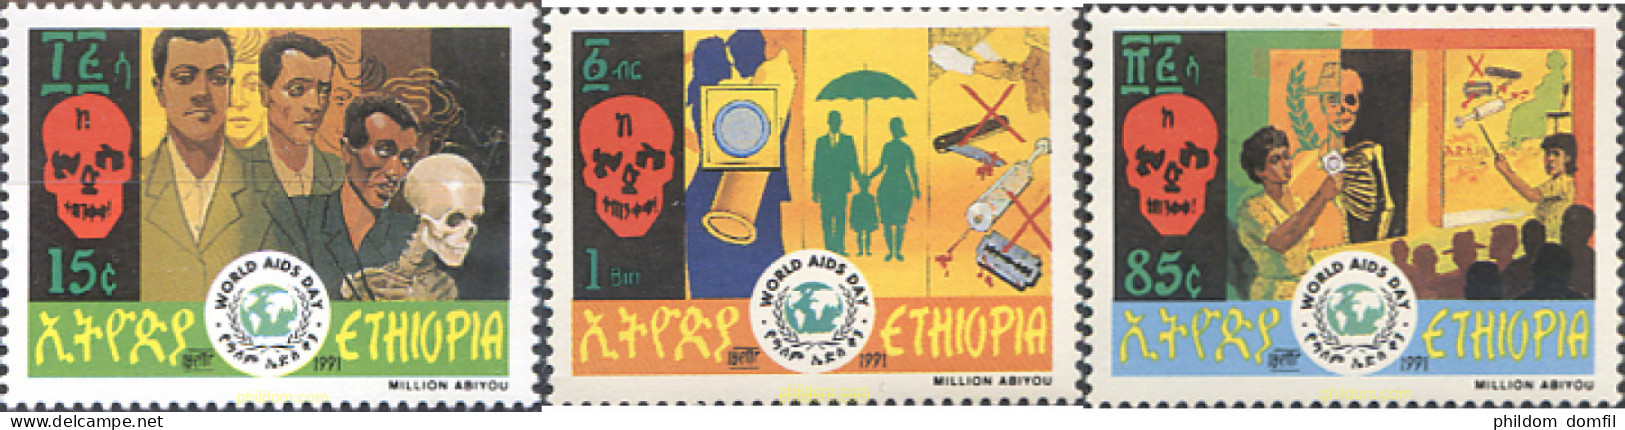 273271 MNH ETIOPIA 1991 DIA MUNDIAL DEL SIDA - Ethiopië